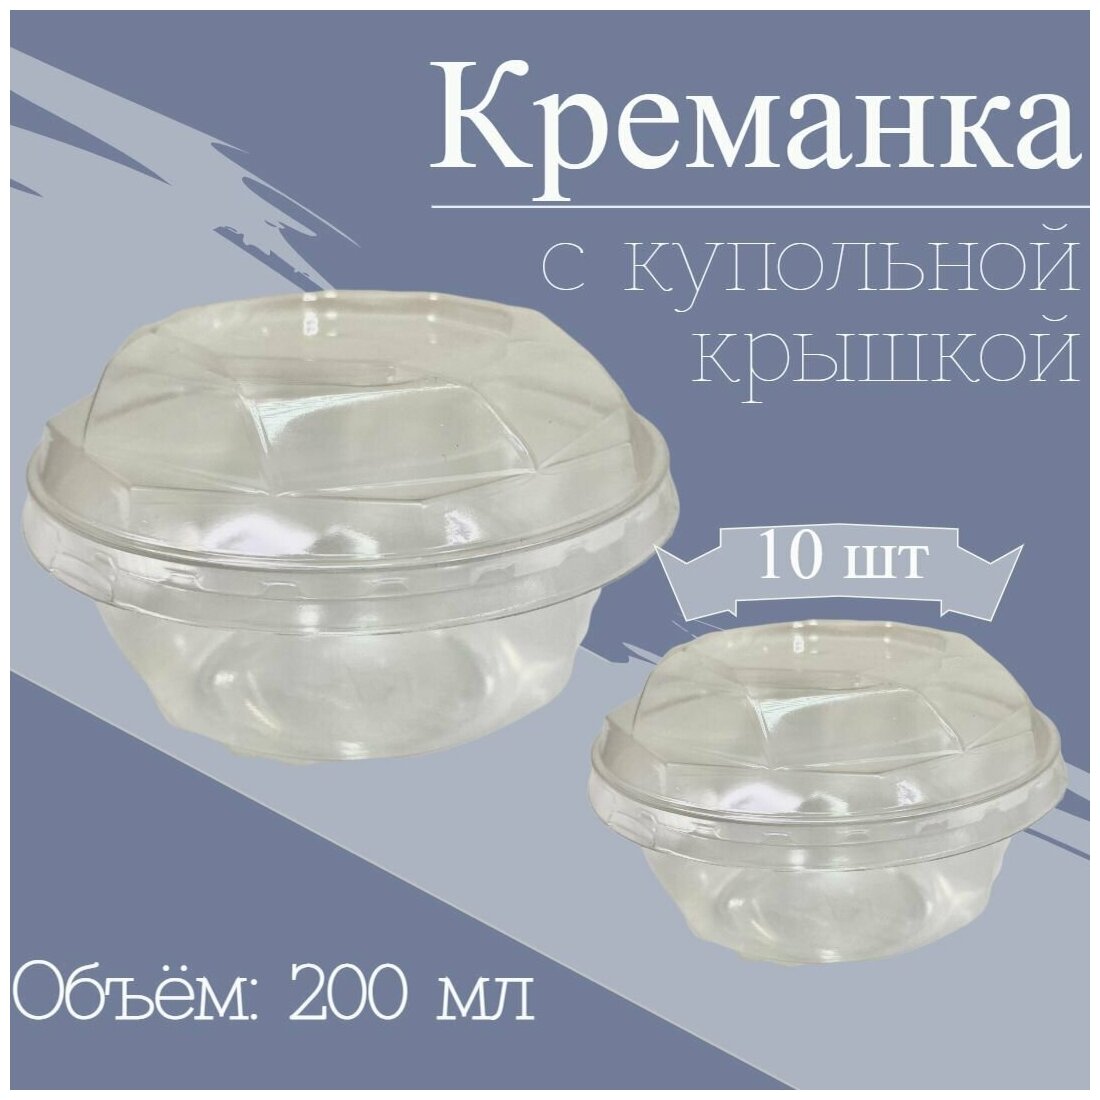 Креманка одноразовая Бриллиант с купольной крышкой, форма для десертов, салатов, 200 мл, ПЭТ, прозрачная, с крышкой, 10 шт.